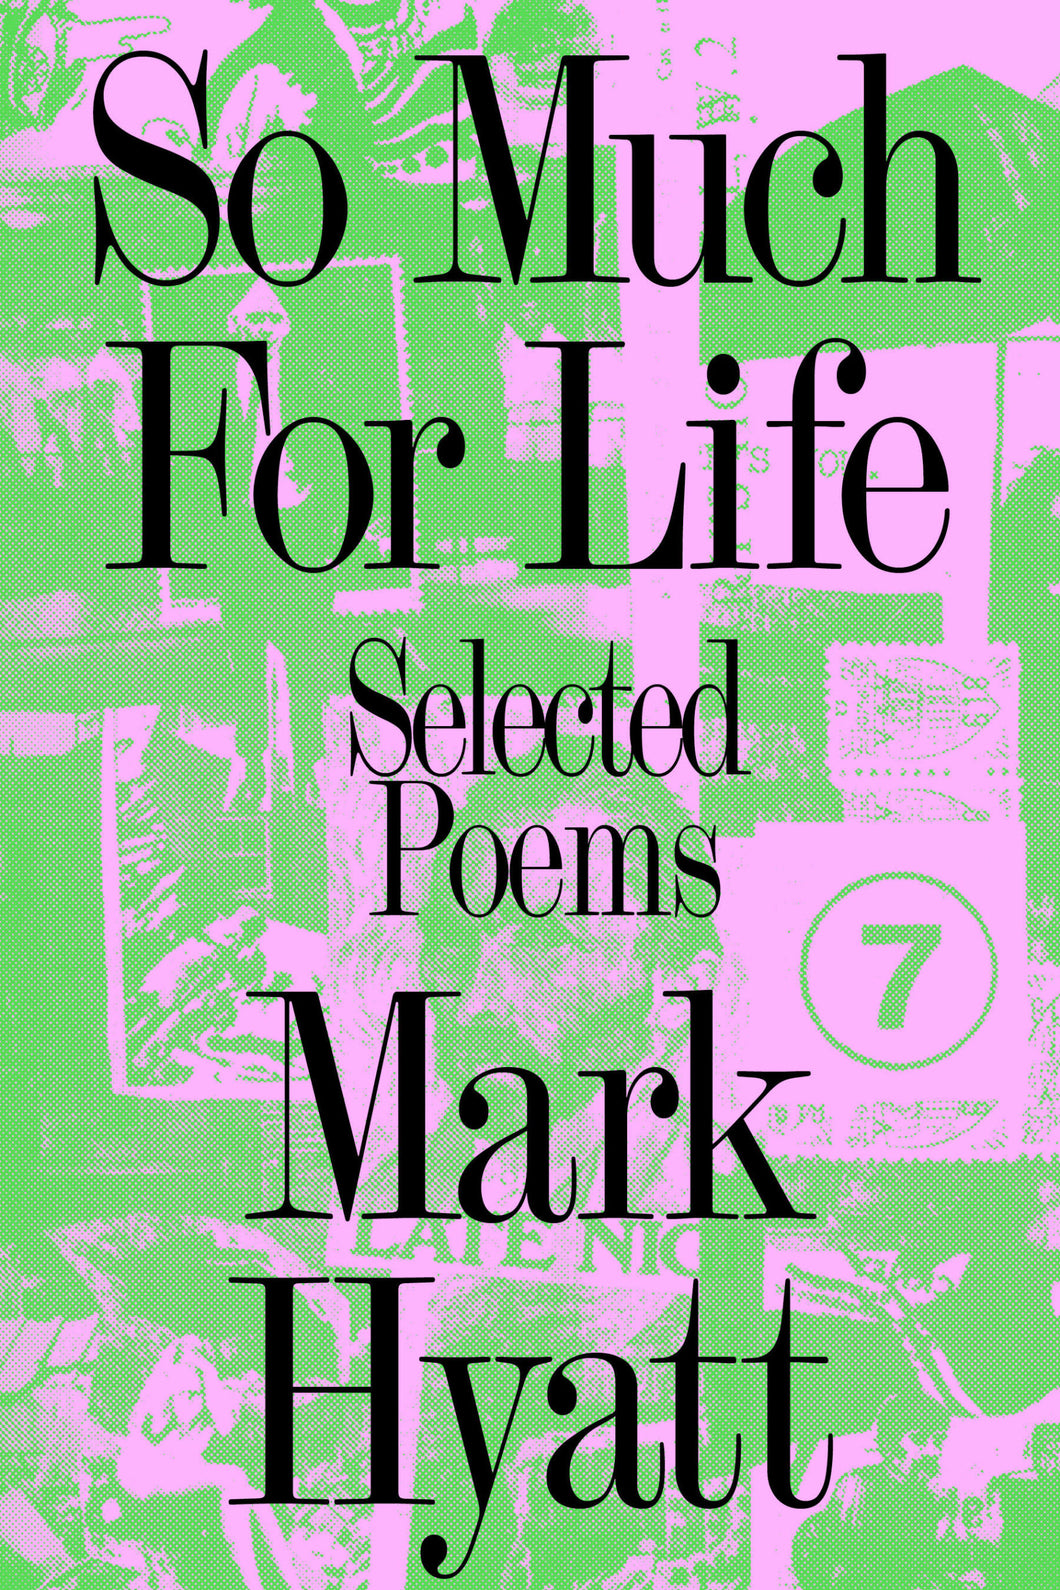 Hyatt, Mark: So Much for Life